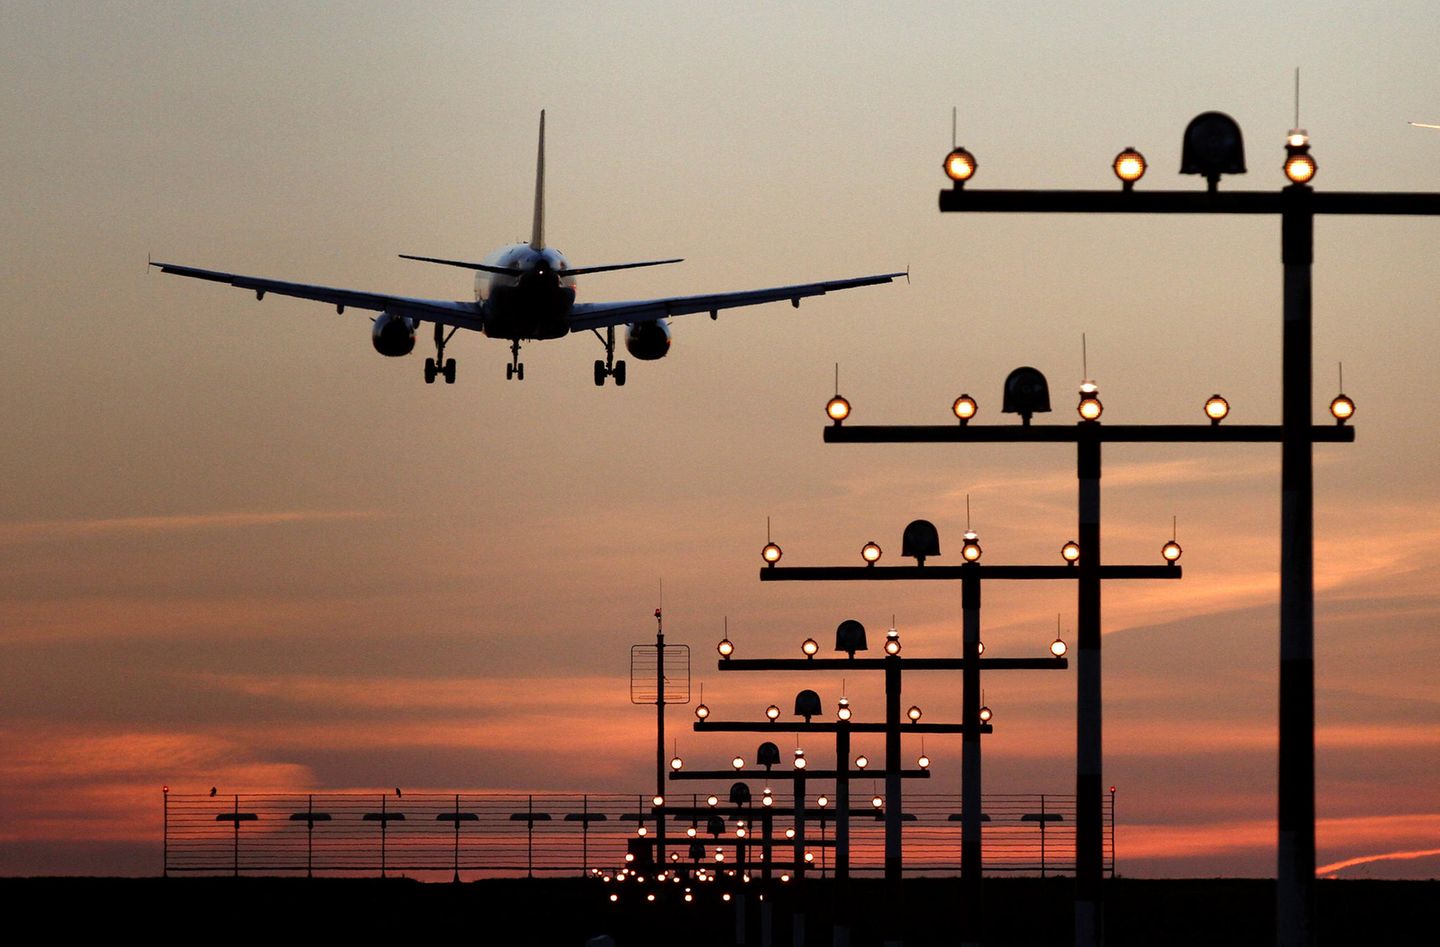 Die International Air Transport Association (IATA) rechnet für 2019 mit 4,6 Milliarden Passagiere